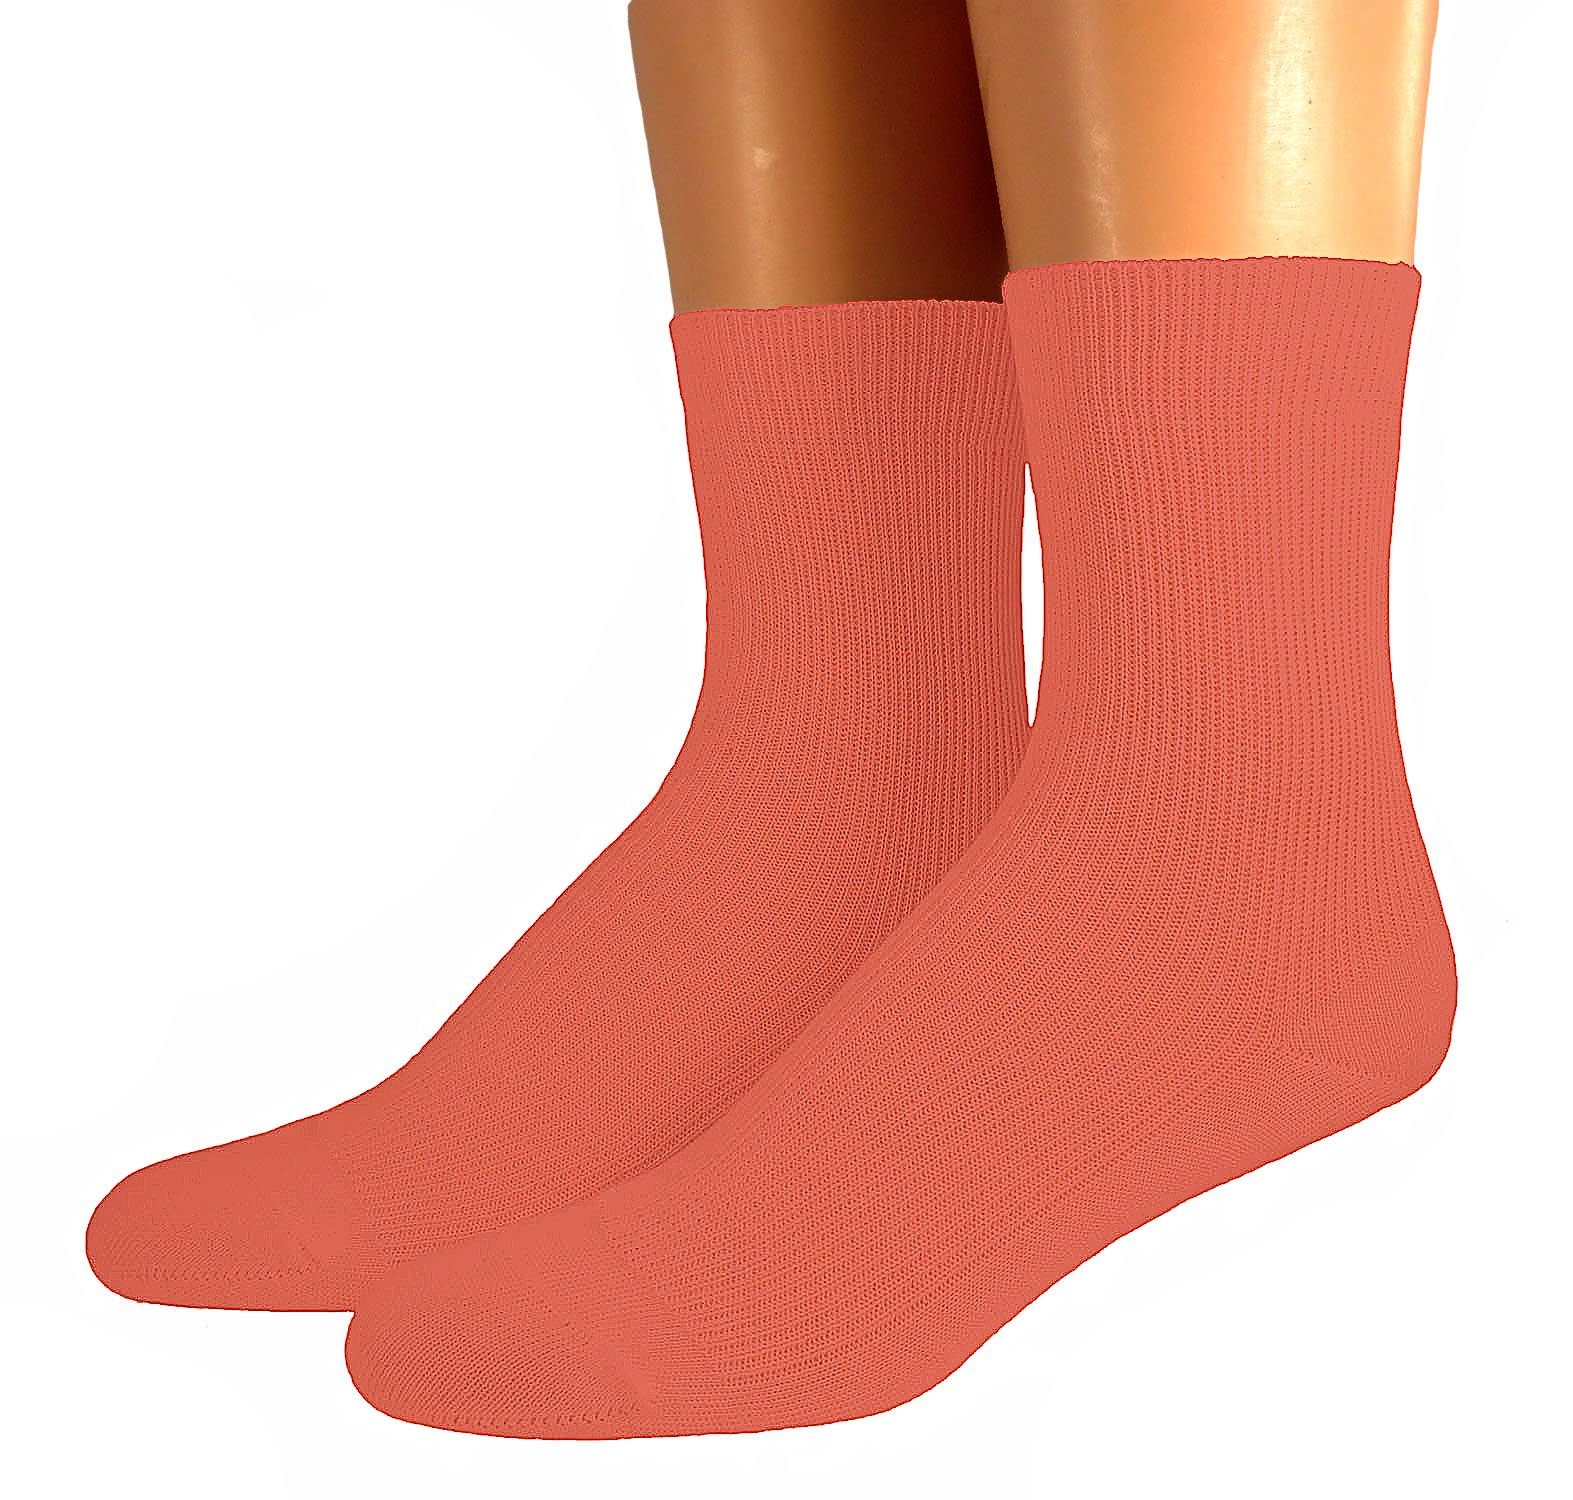 WERI SPEZIALS Strumpfhersteller GmbH Basicsocken Damen Socken 100% Bio Baumwolle